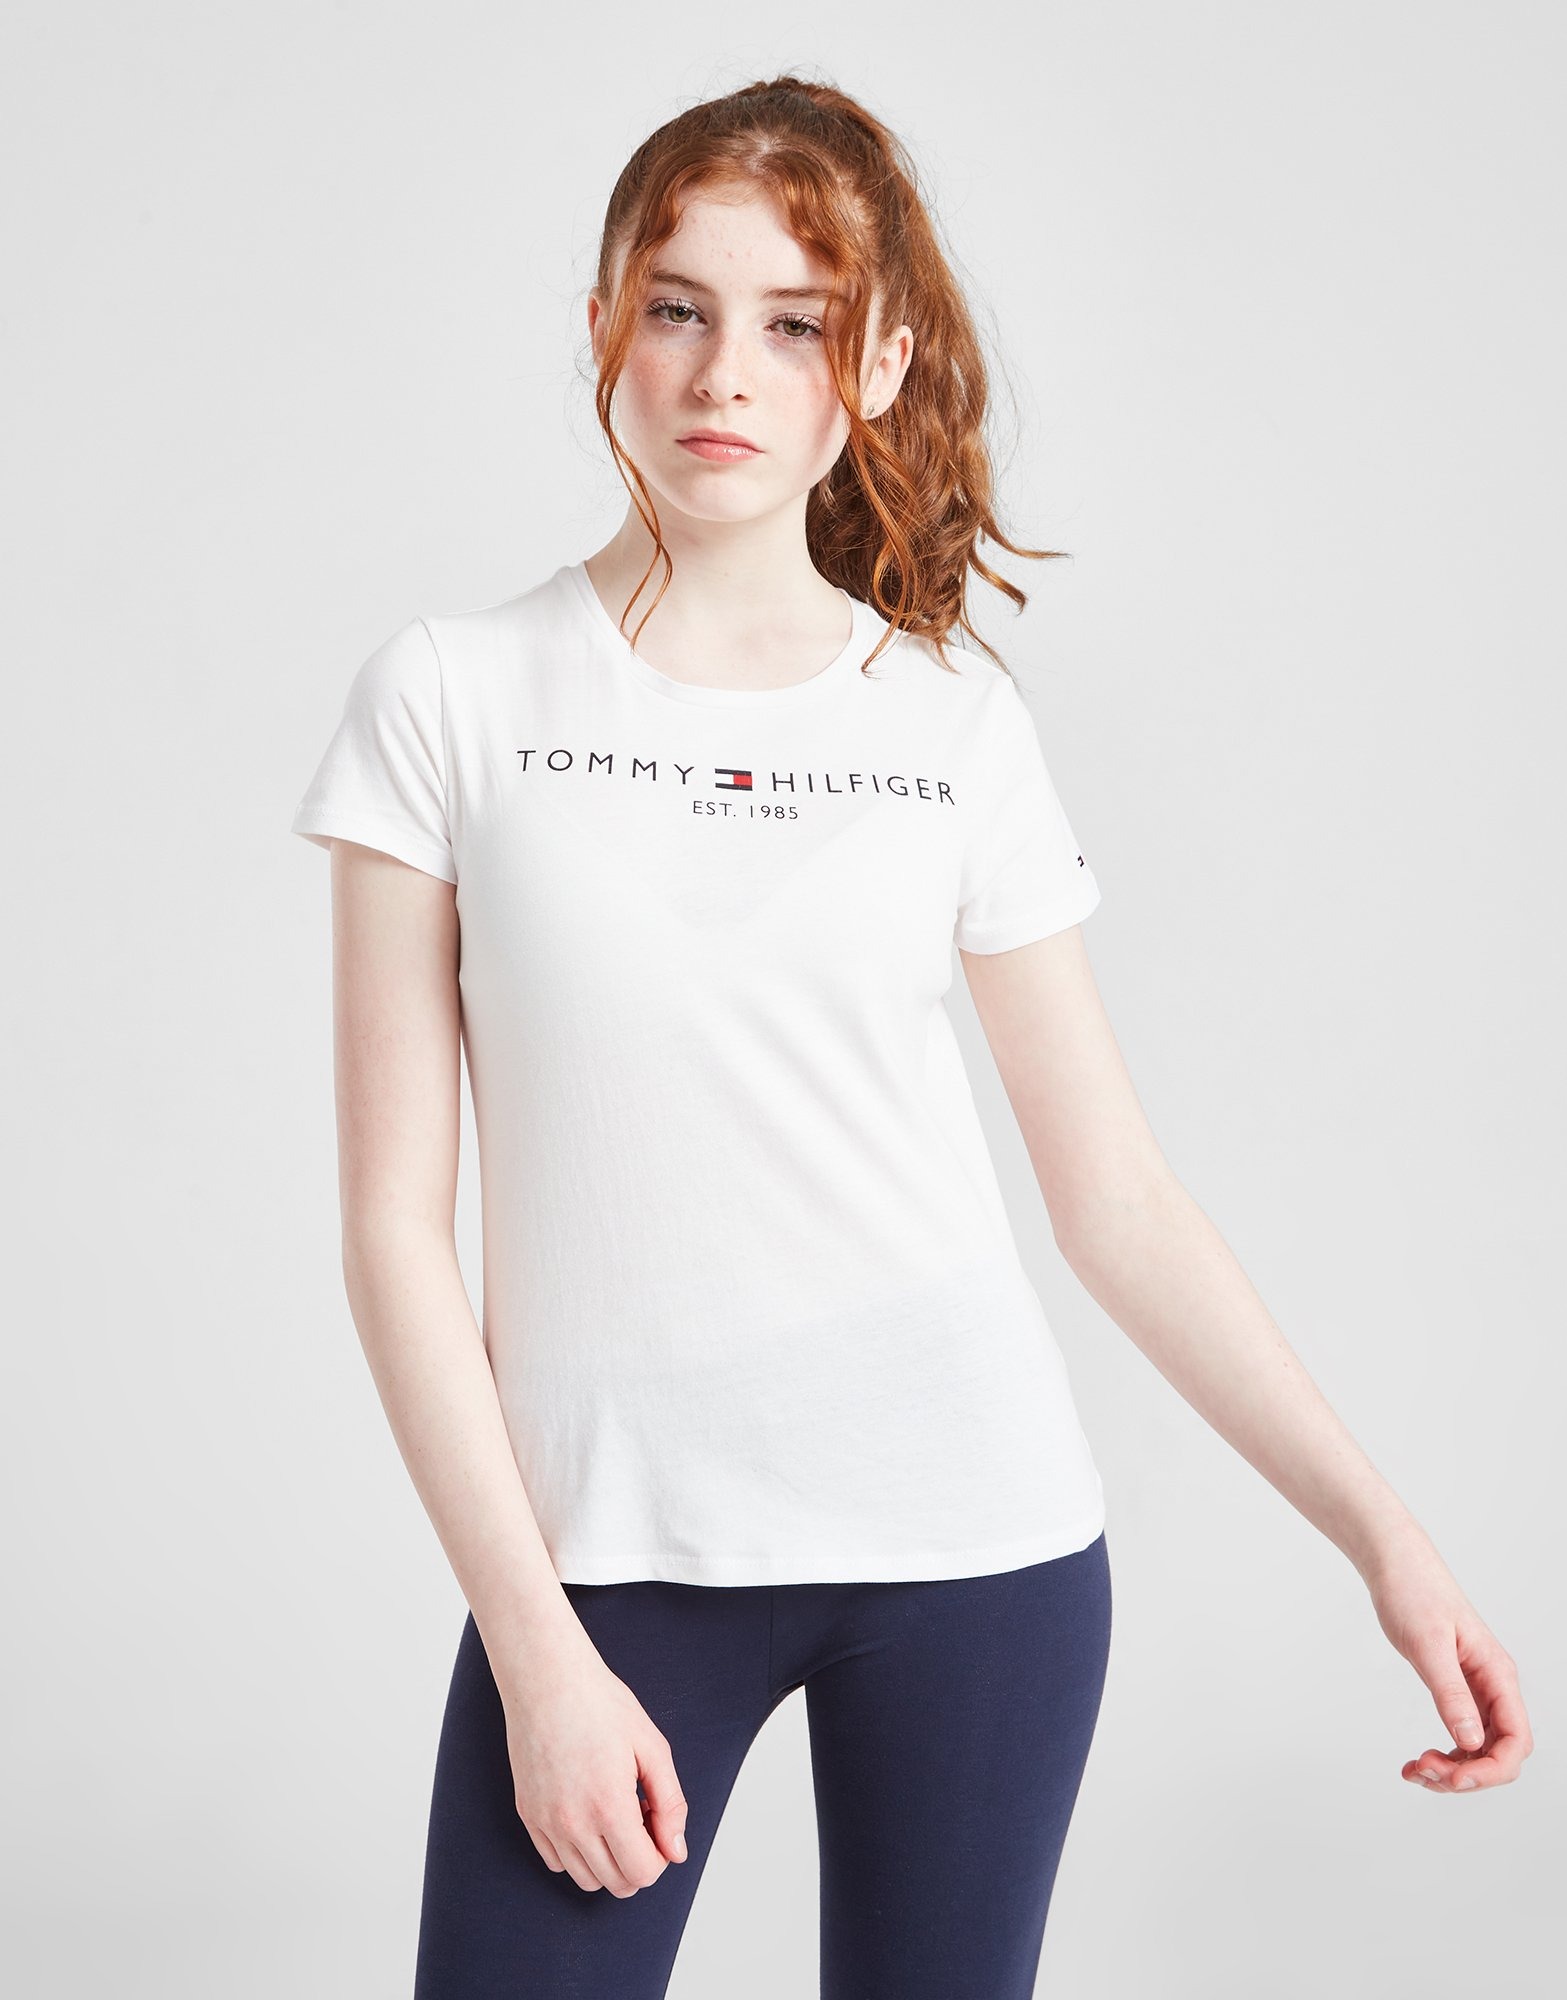 Tommy Hilfiger Girls\' Essential T-Shirt Weiss Deutschland Kinder Sports JD 